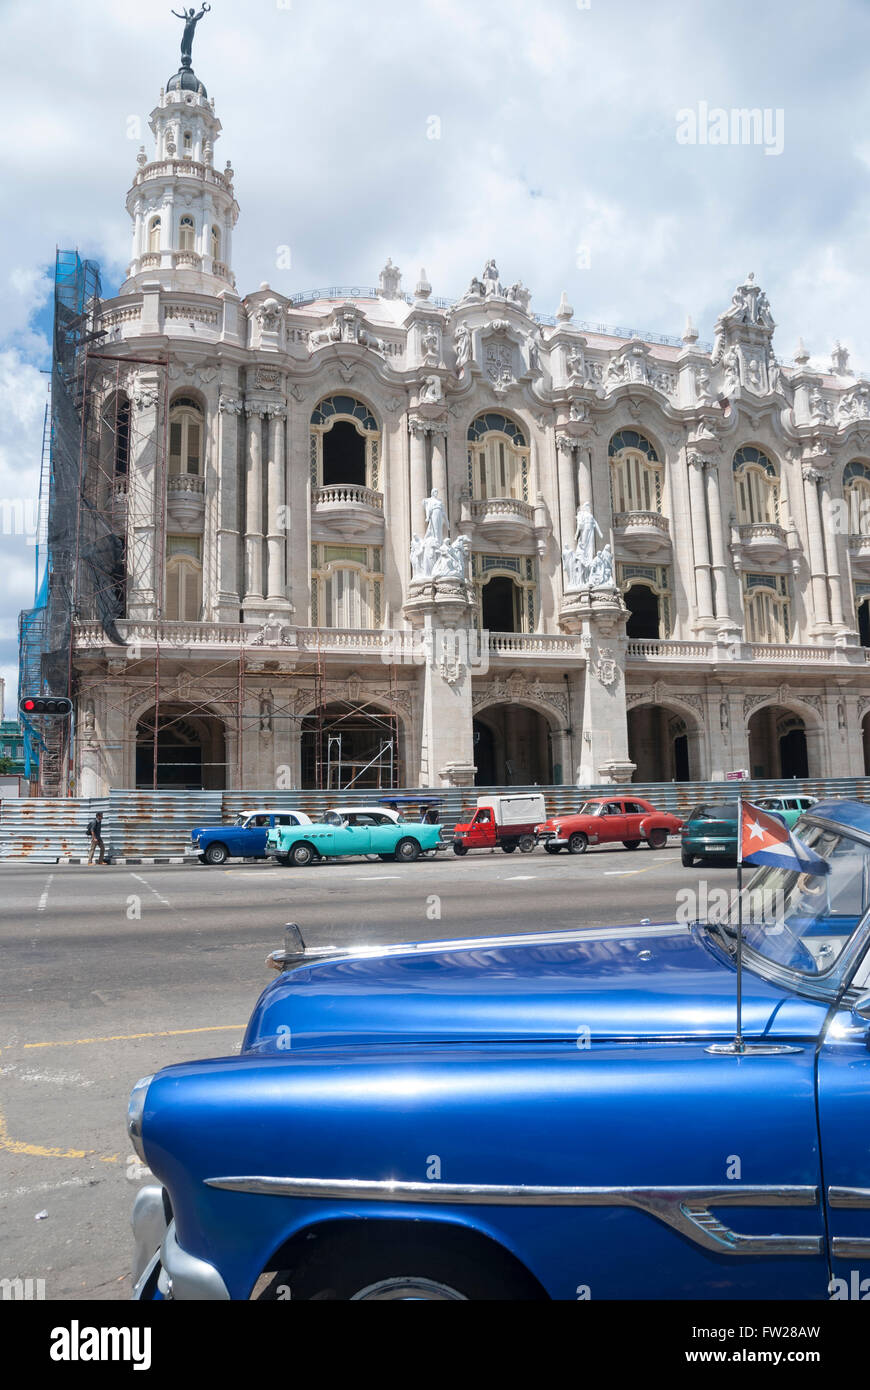 Vintage alte amerikanische 1950 Autos aufgereiht zu mieten wie taxis und Fahrzeuge auf dem Prado im Zentrum Havanna Kuba-tour Stockfoto